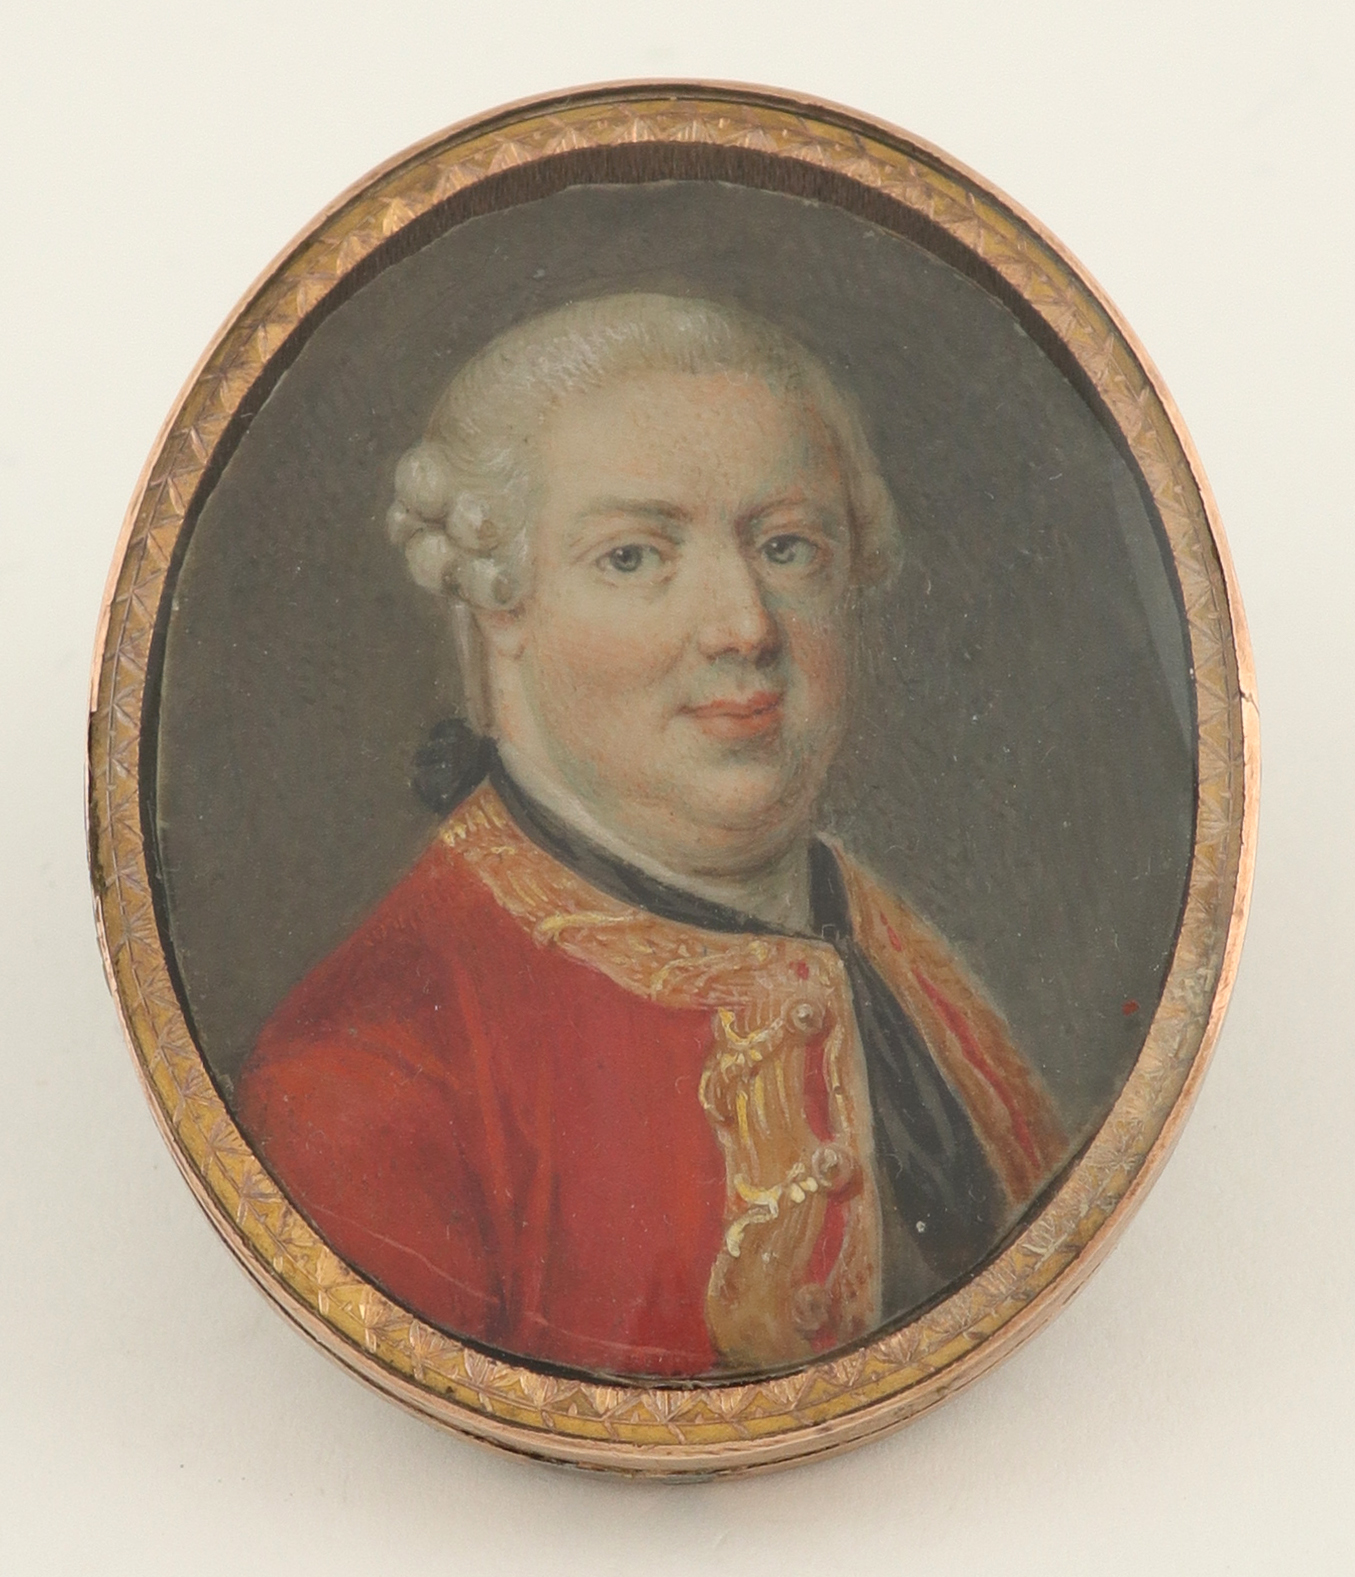 λEnglish School Late 18th Century Portrait miniature of a gentleman, in a red coat and black stock